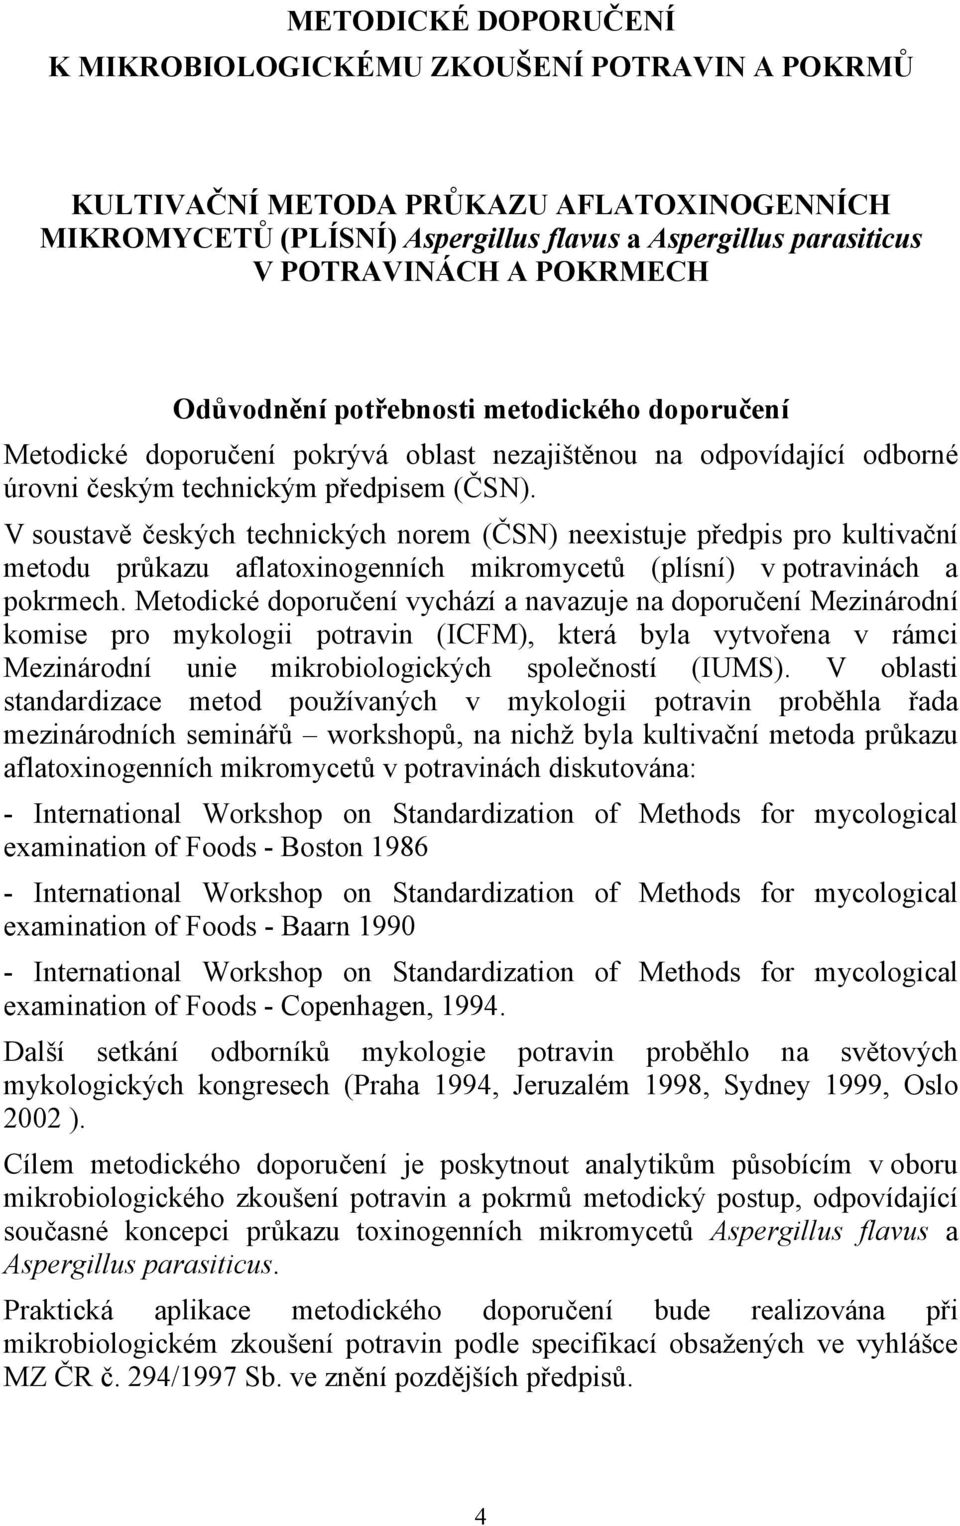 V soustavě českých technických norem (ČSN) neexistuje předpis pro kultivační metodu průkazu aflatoxinogenních mikromycetů (plísní) v potravinách a pokrmech.